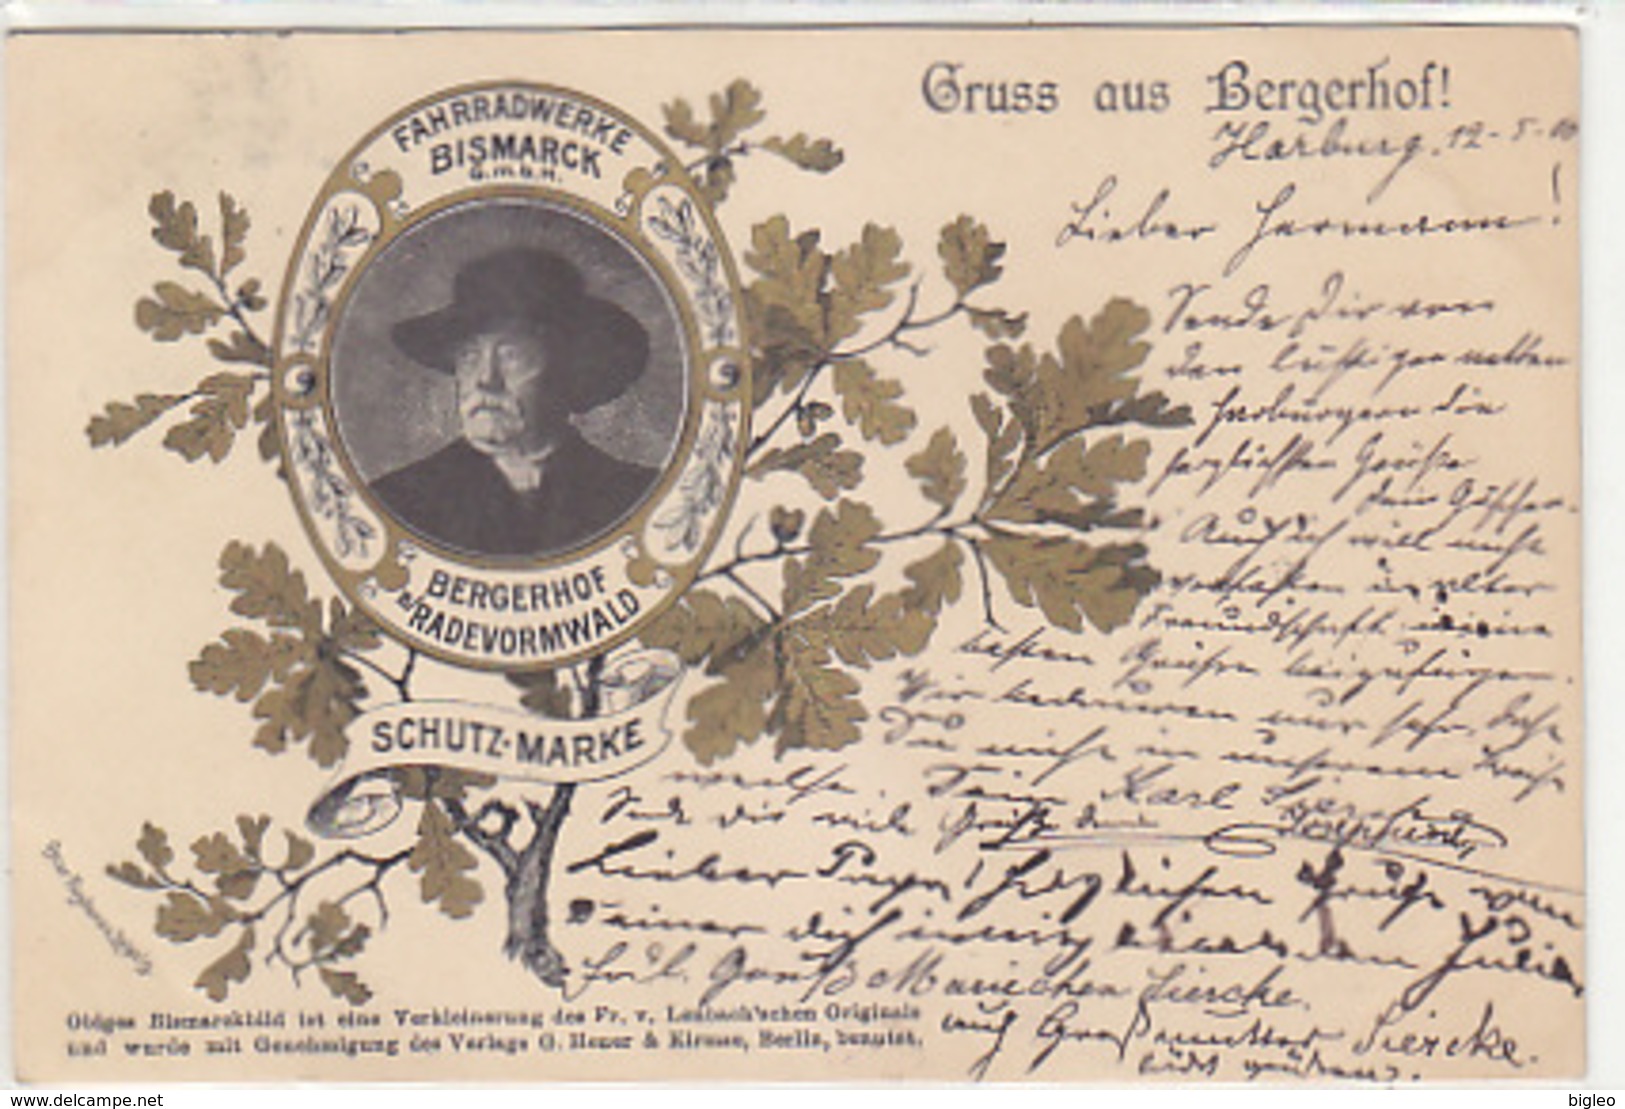 Gruss Aus Bergerhof - Fahrradwerke Bismarck GmbH - 1900    (A-92-180613) - Pubblicitari